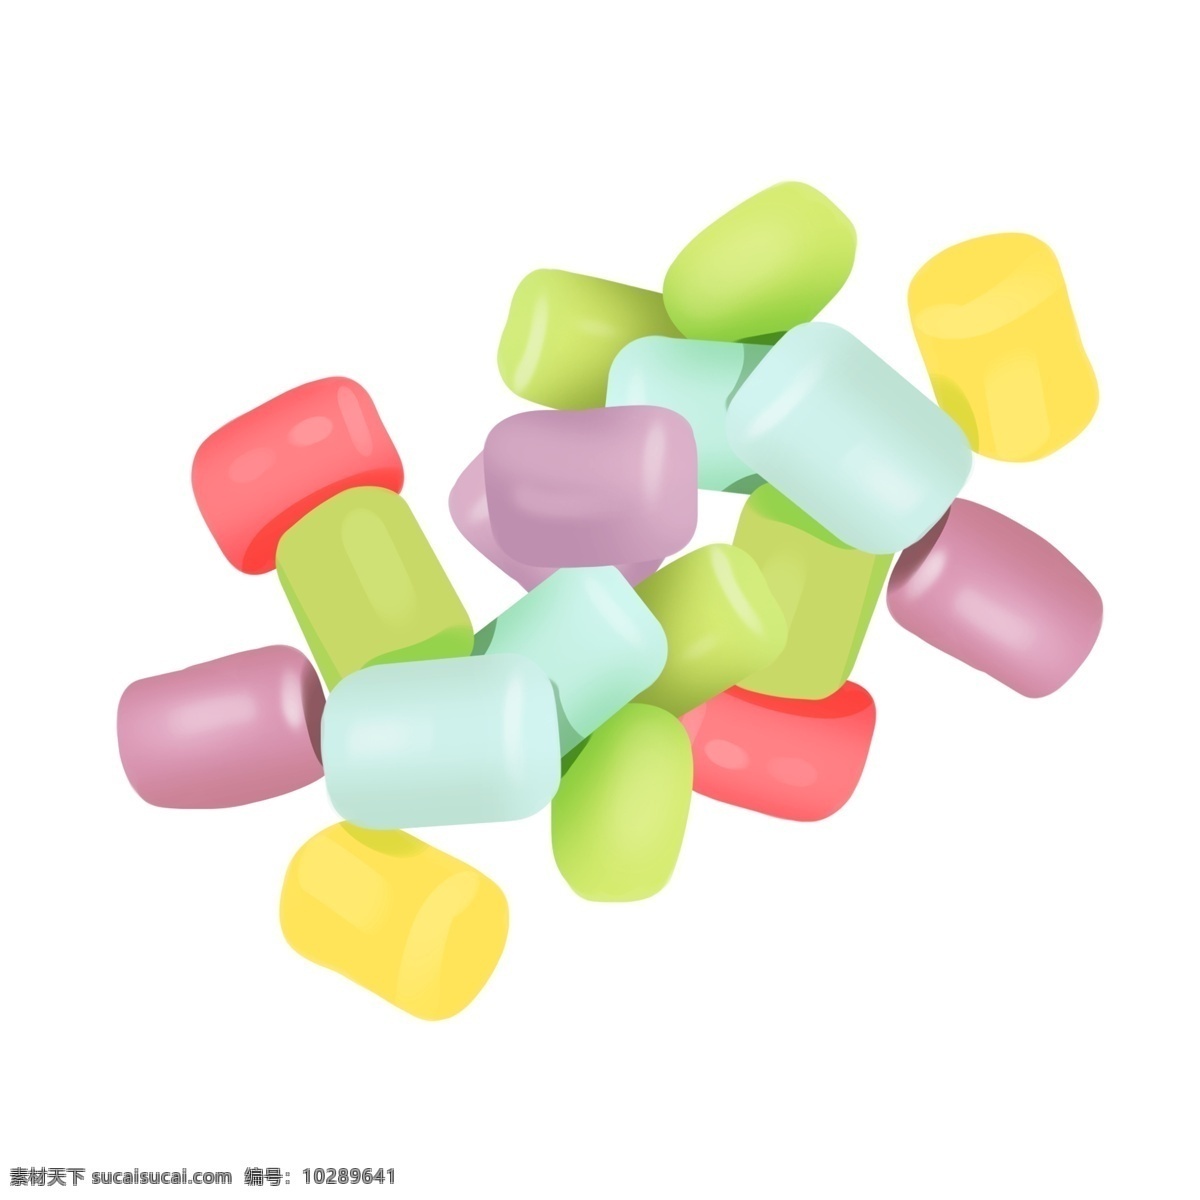 漂亮 彩色 糖果 插画 漂亮的糖果 彩色糖果插画 手绘糖果 糖果装饰 美味的糖果 甜品插画 零食插画